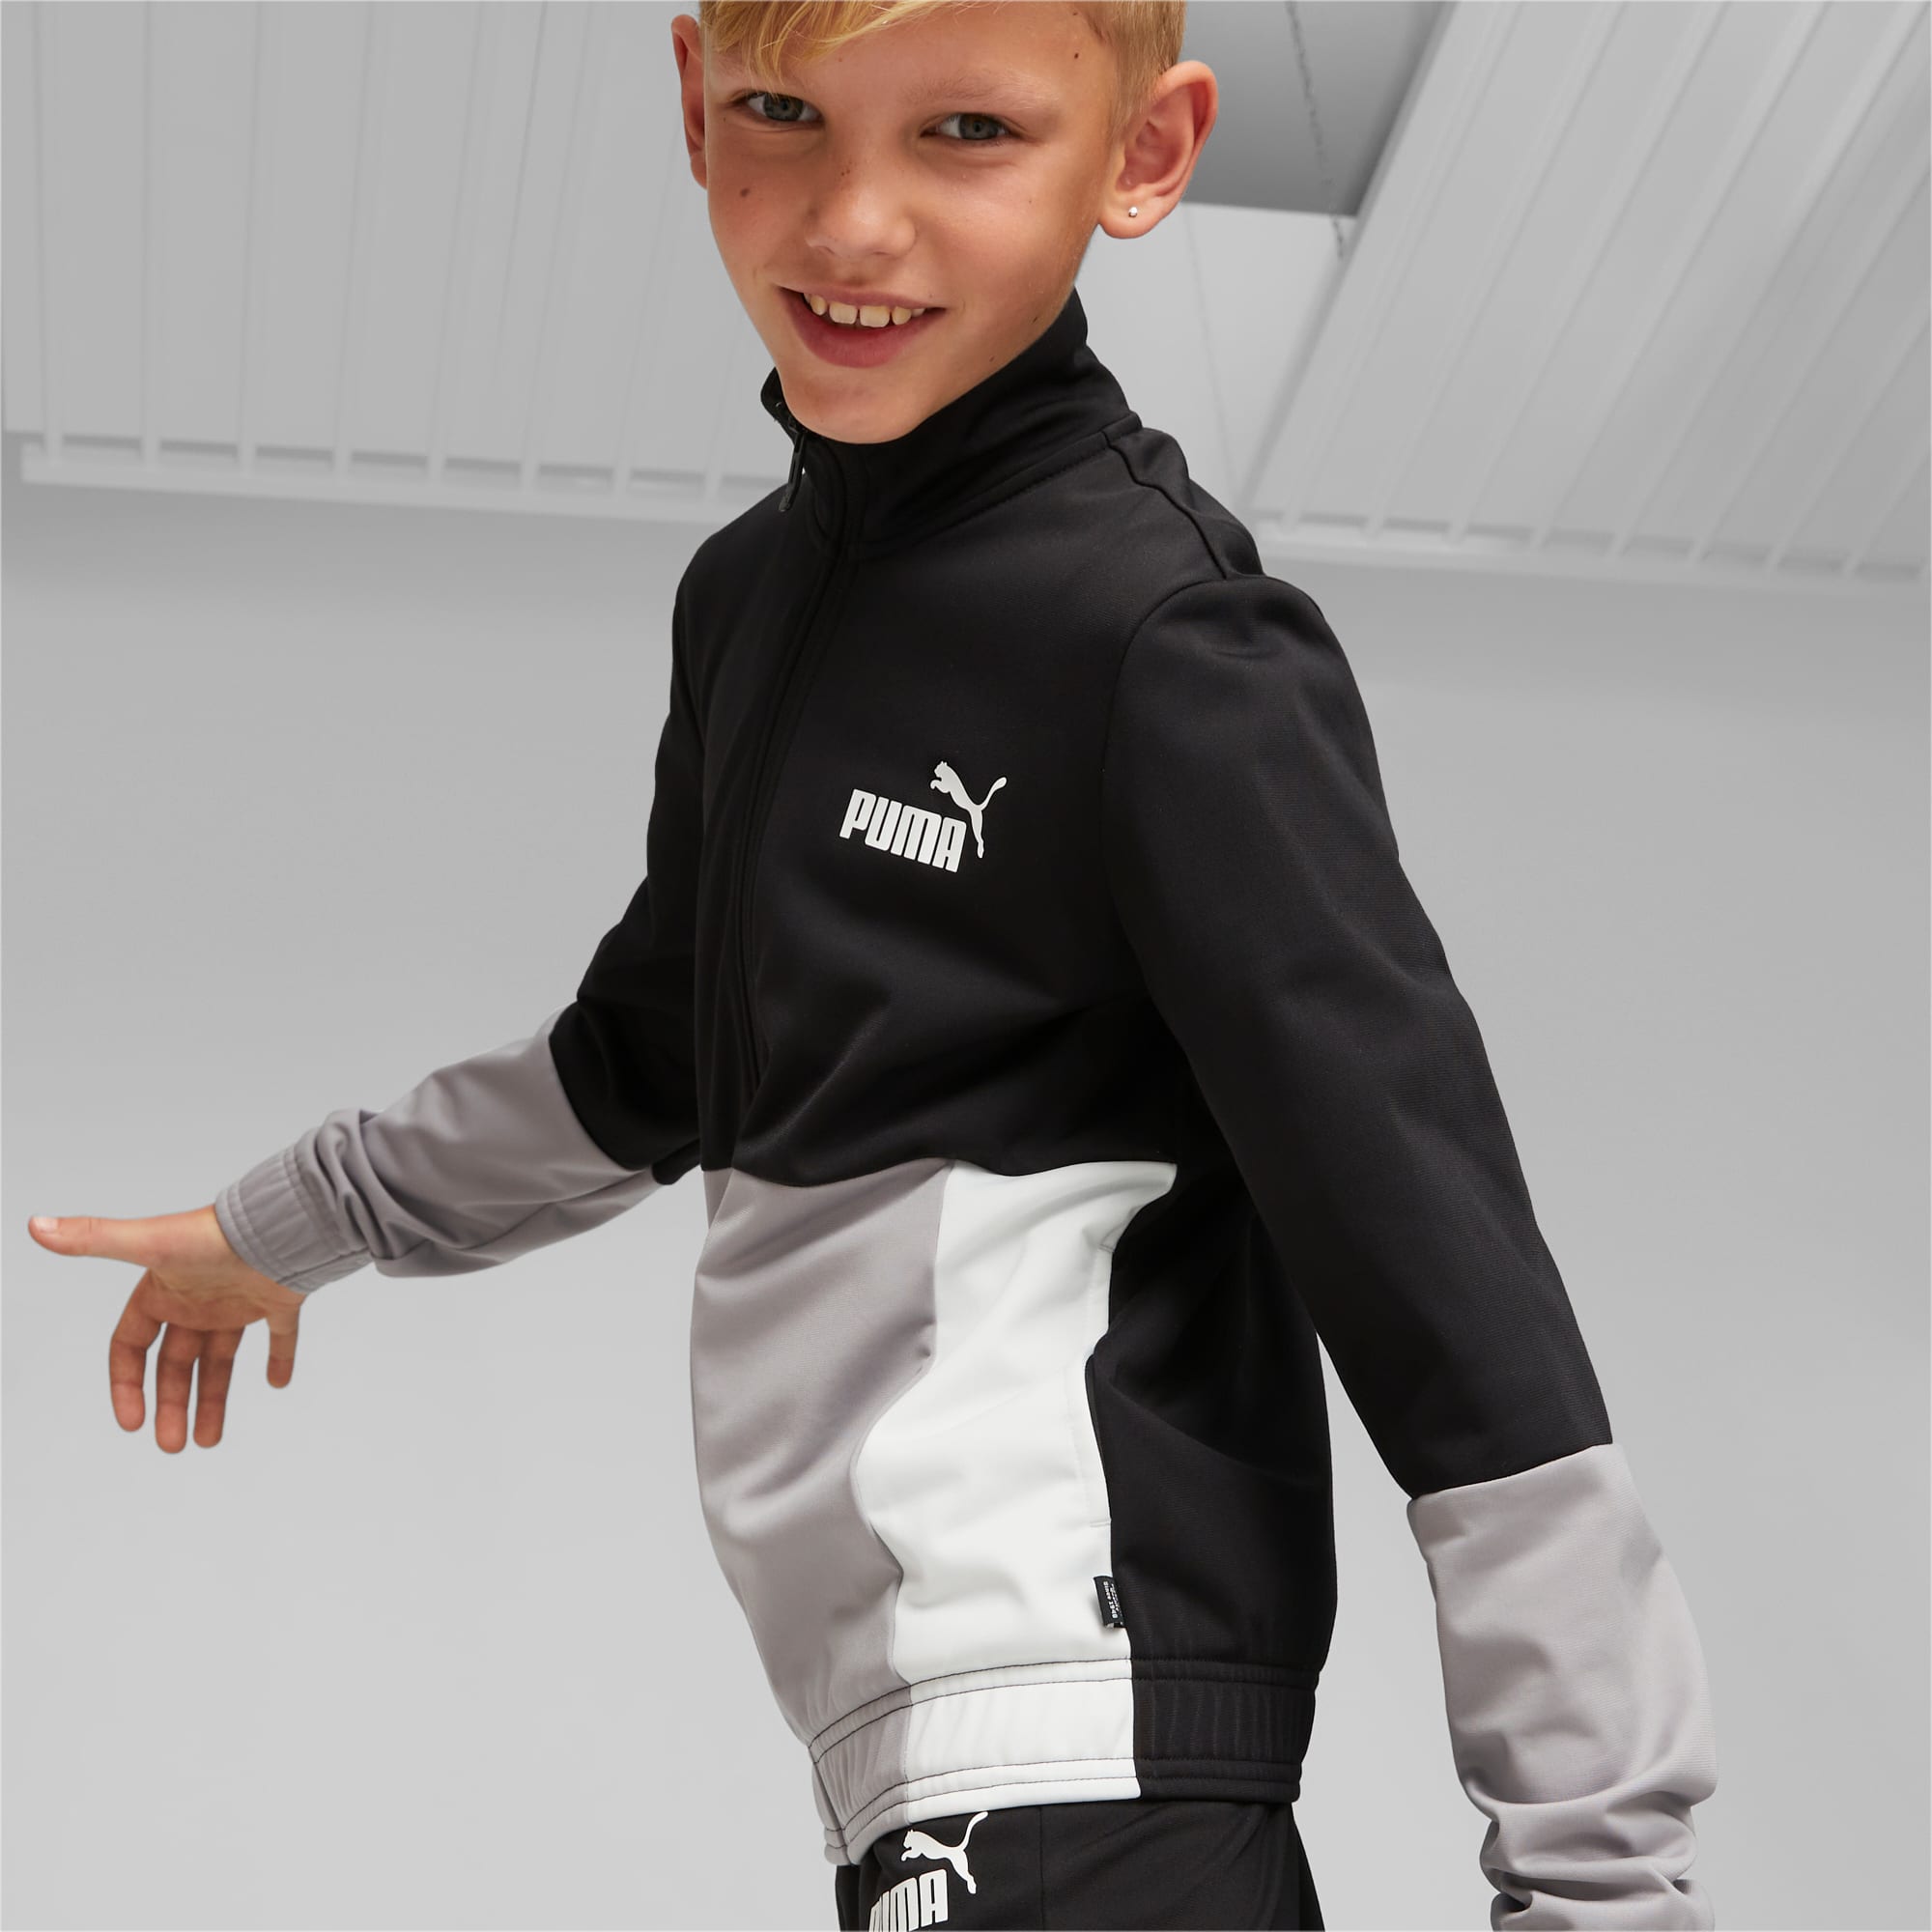 PUMA Colourblock Poly Suit Teenager Für Kinder, Schwarz, Größe: 128, Kleidung